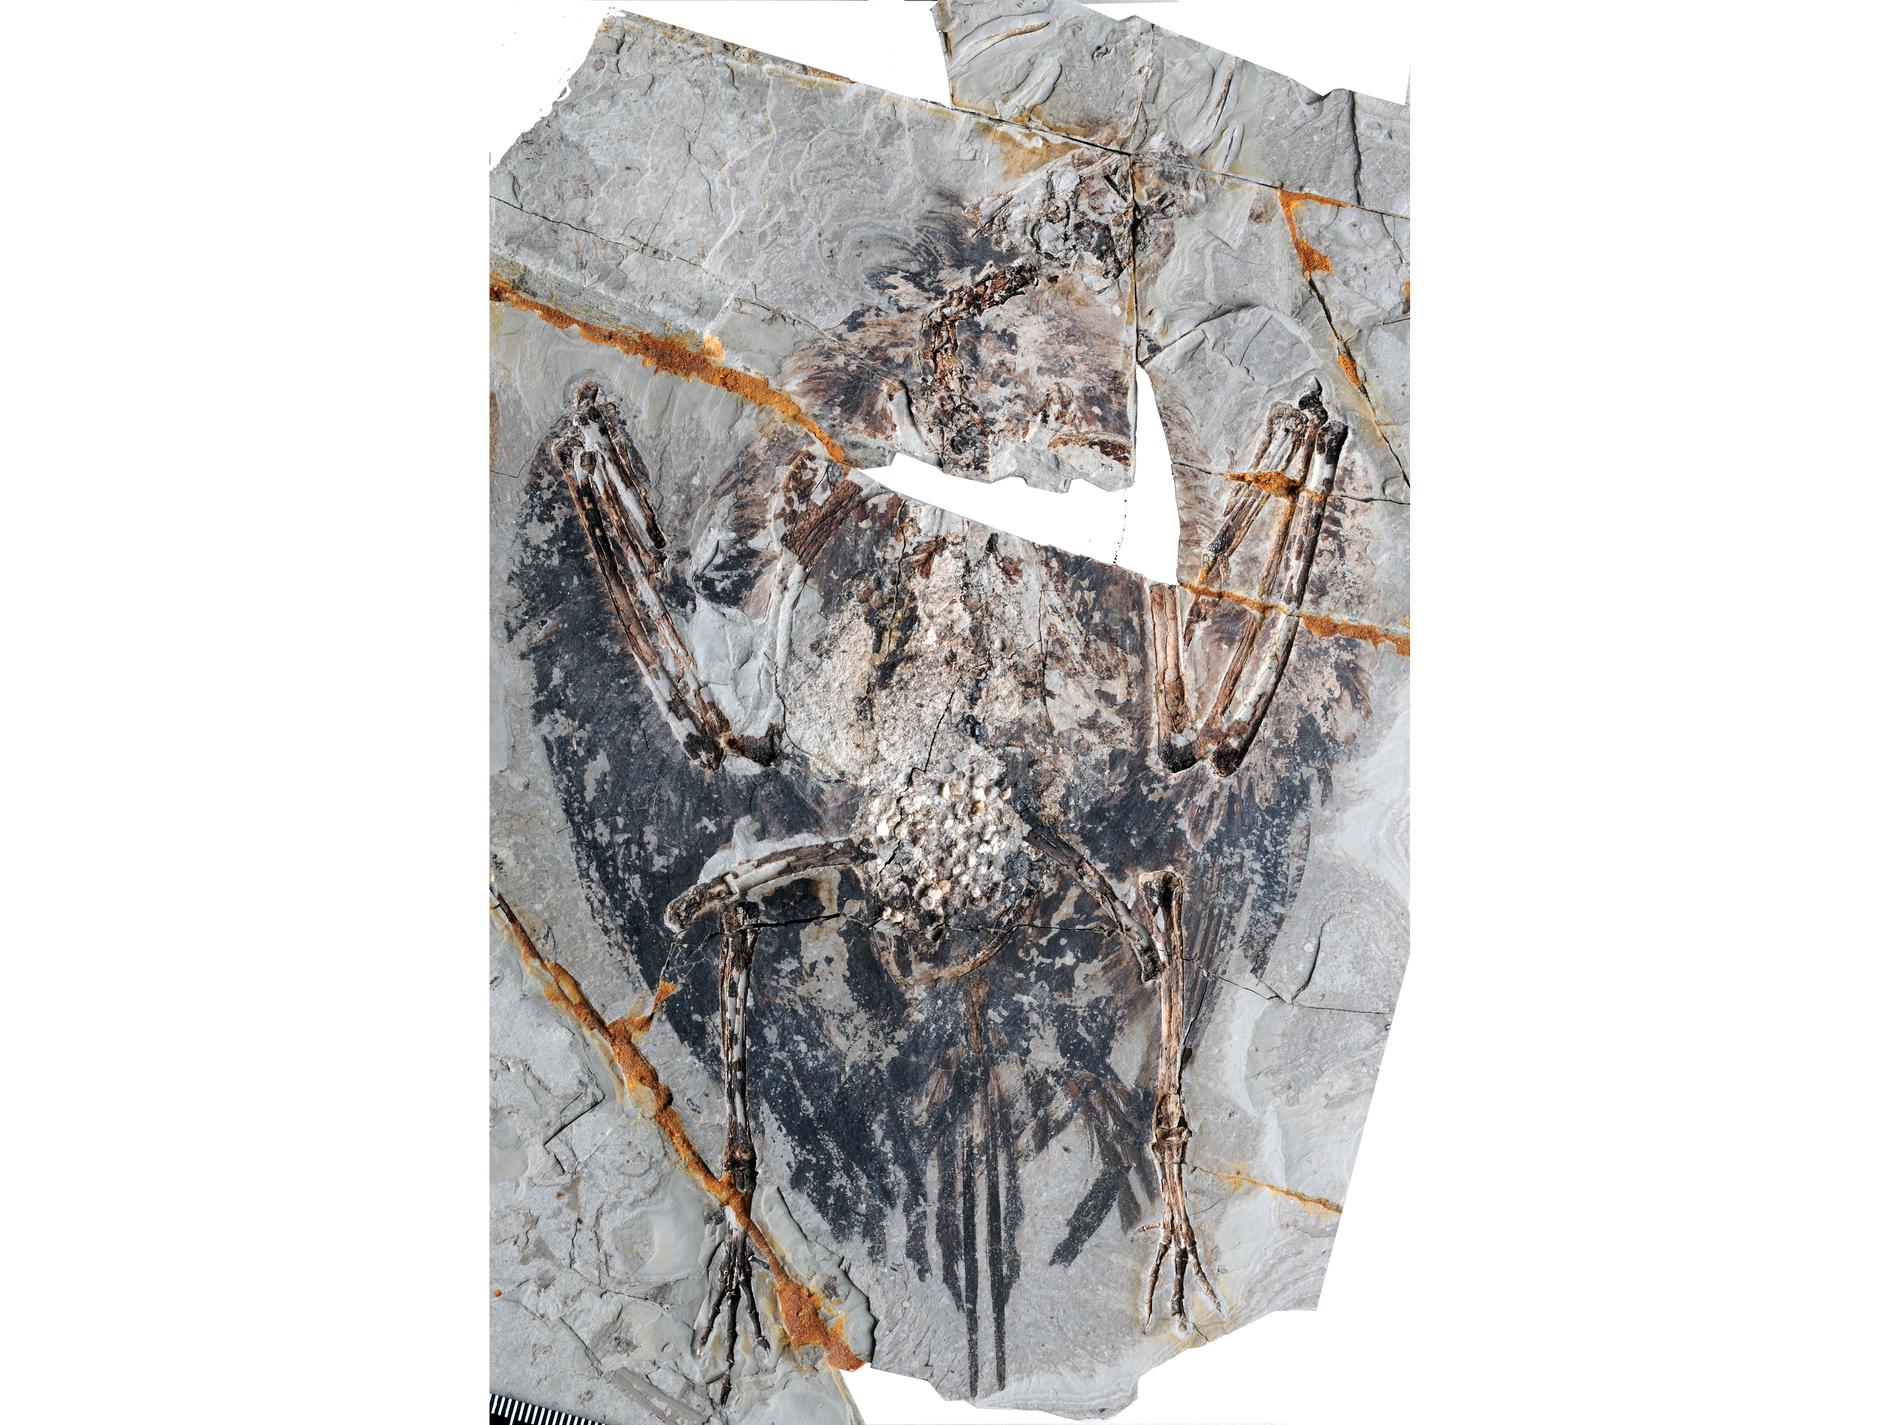 För första gången har ett fossil från en av tidigaste fåglarna hittats med bevarade lungor. Fossilet är 120 miljoner år gammalt.